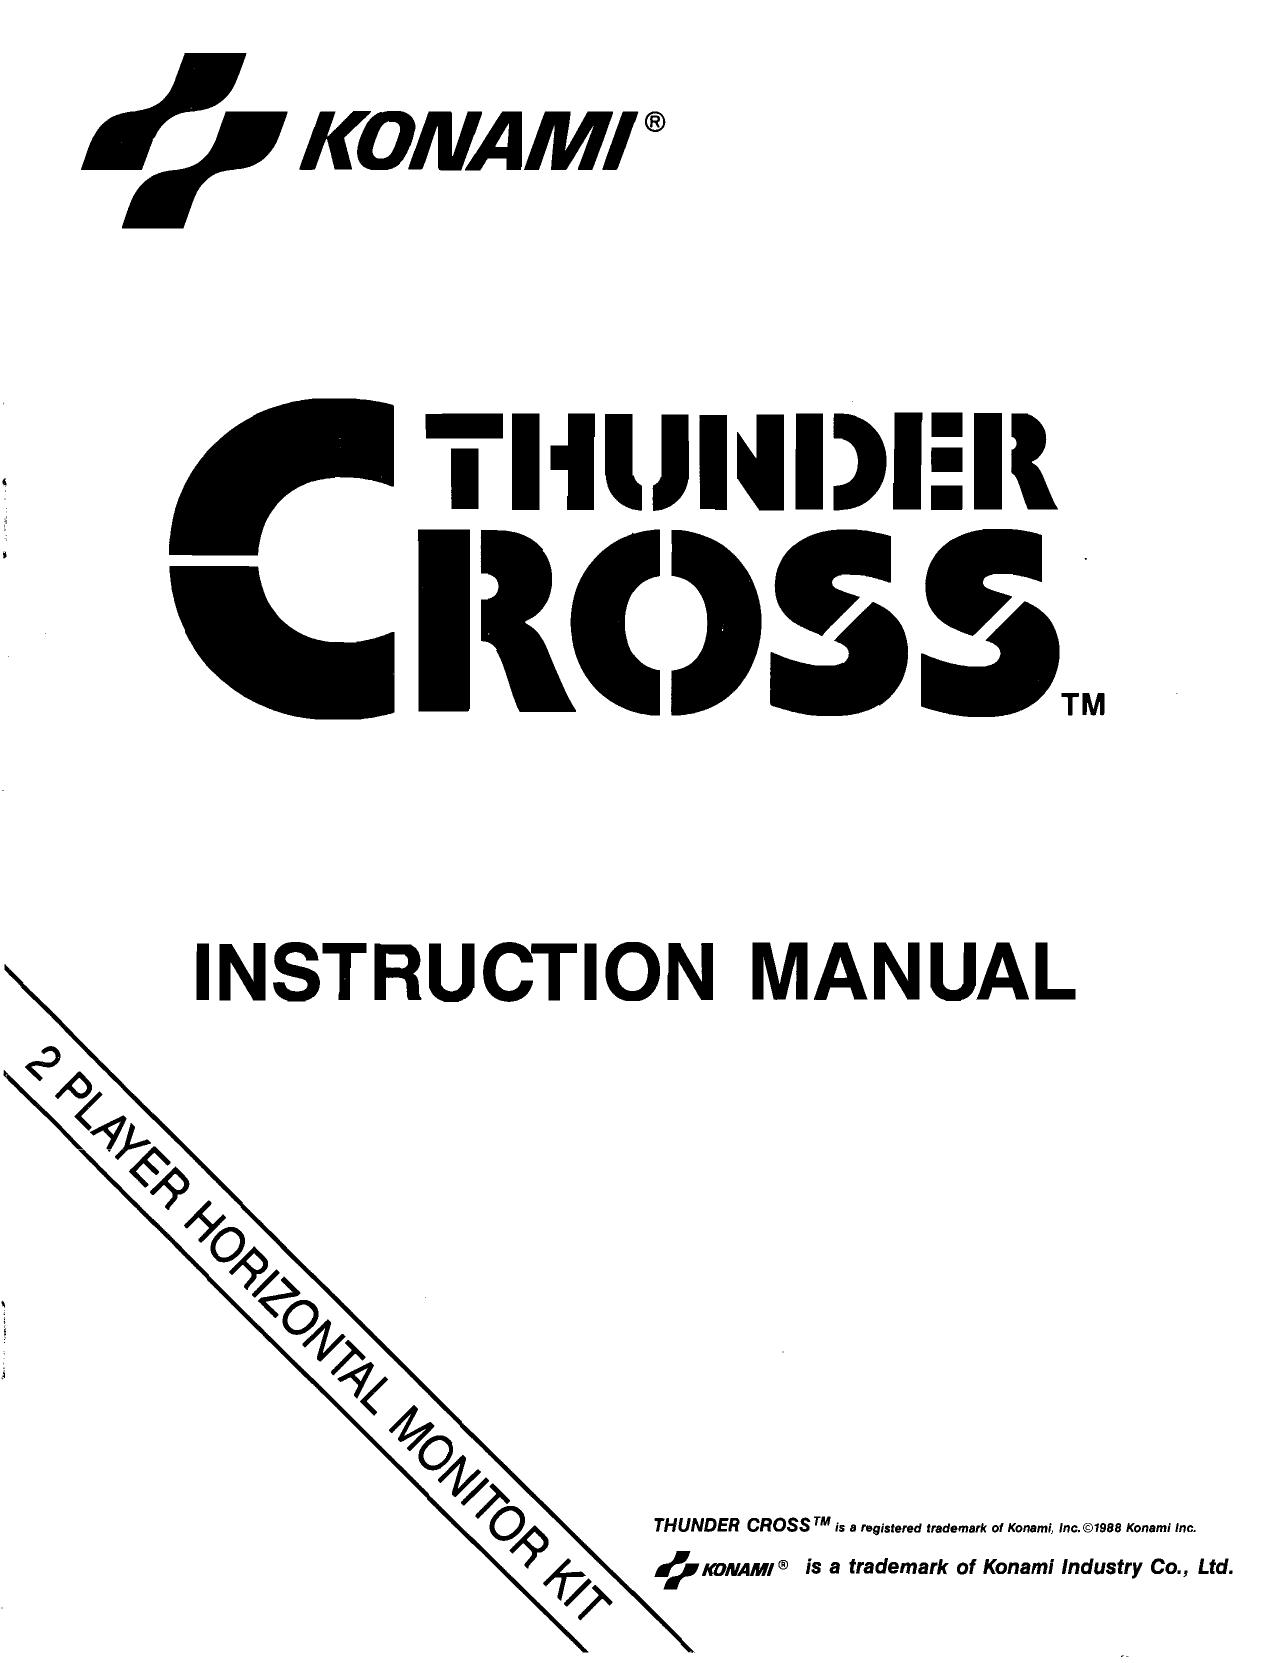 Thunder Cross